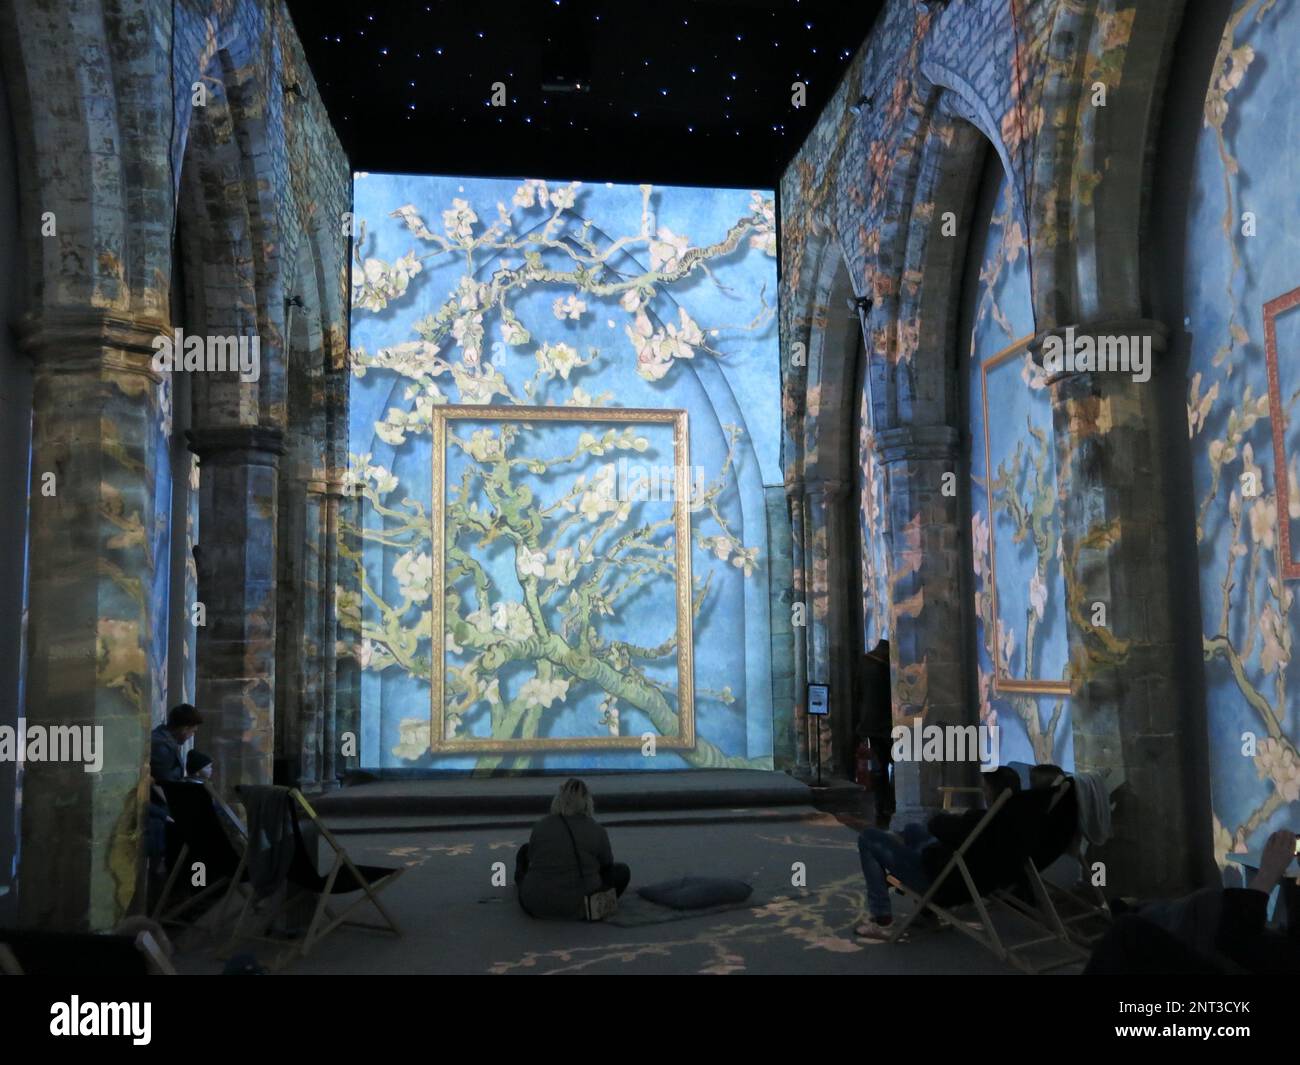 L'art immersif : une nouvelle façon de découvrir les œuvres de Van Gogh comme le tableau « Almond Blossom » projeté en 3D dans une ancienne église de Leicester. Banque D'Images